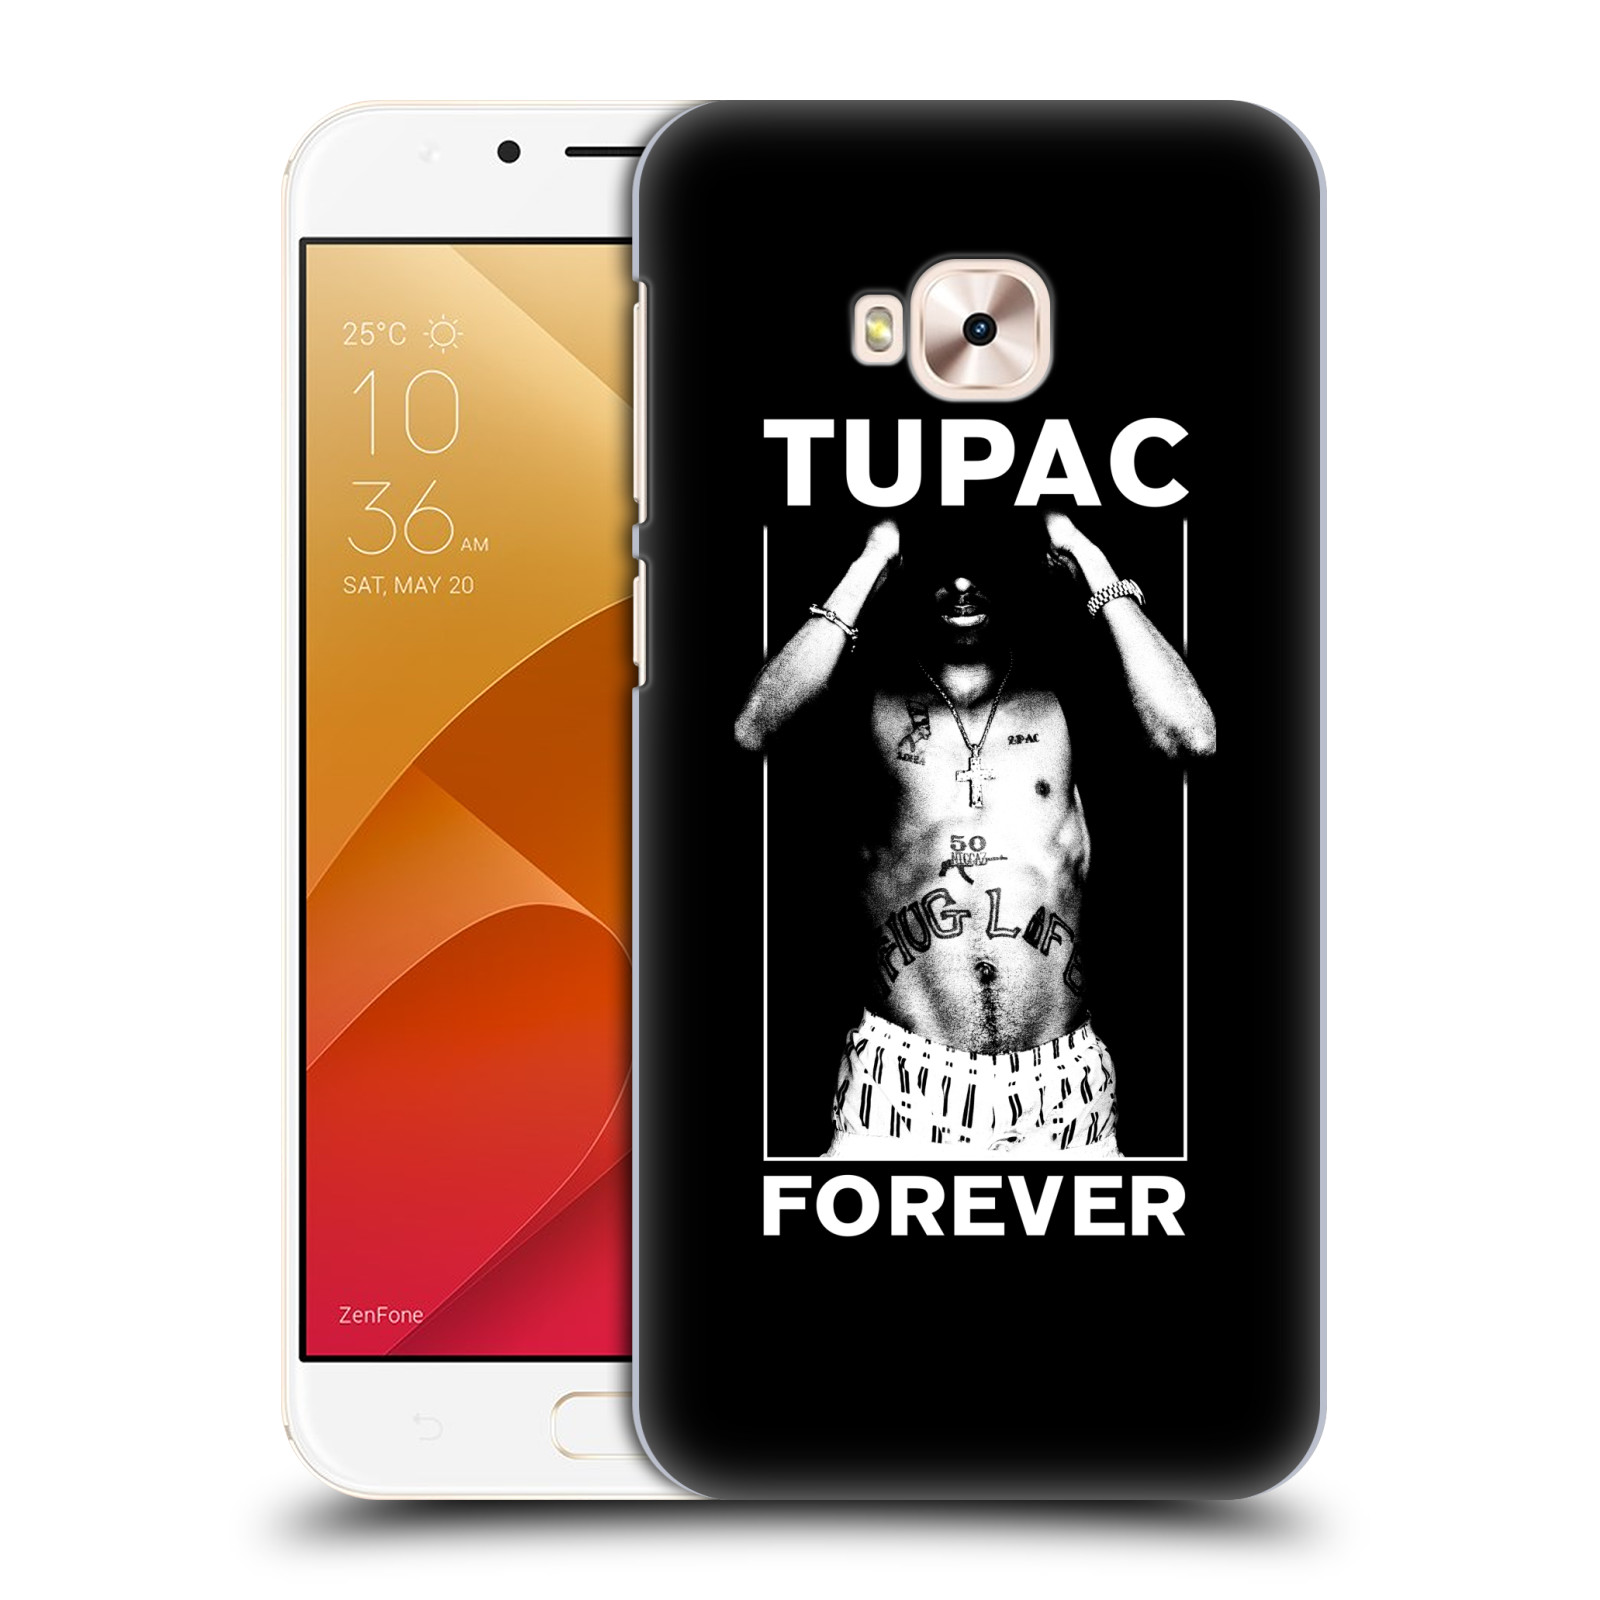 HEAD CASE plastový obal na mobil Asus Zenfone 4 Selfie Pro ZD552KL Zpěvák rapper Tupac Shakur 2Pac bílý popisek FOREVER